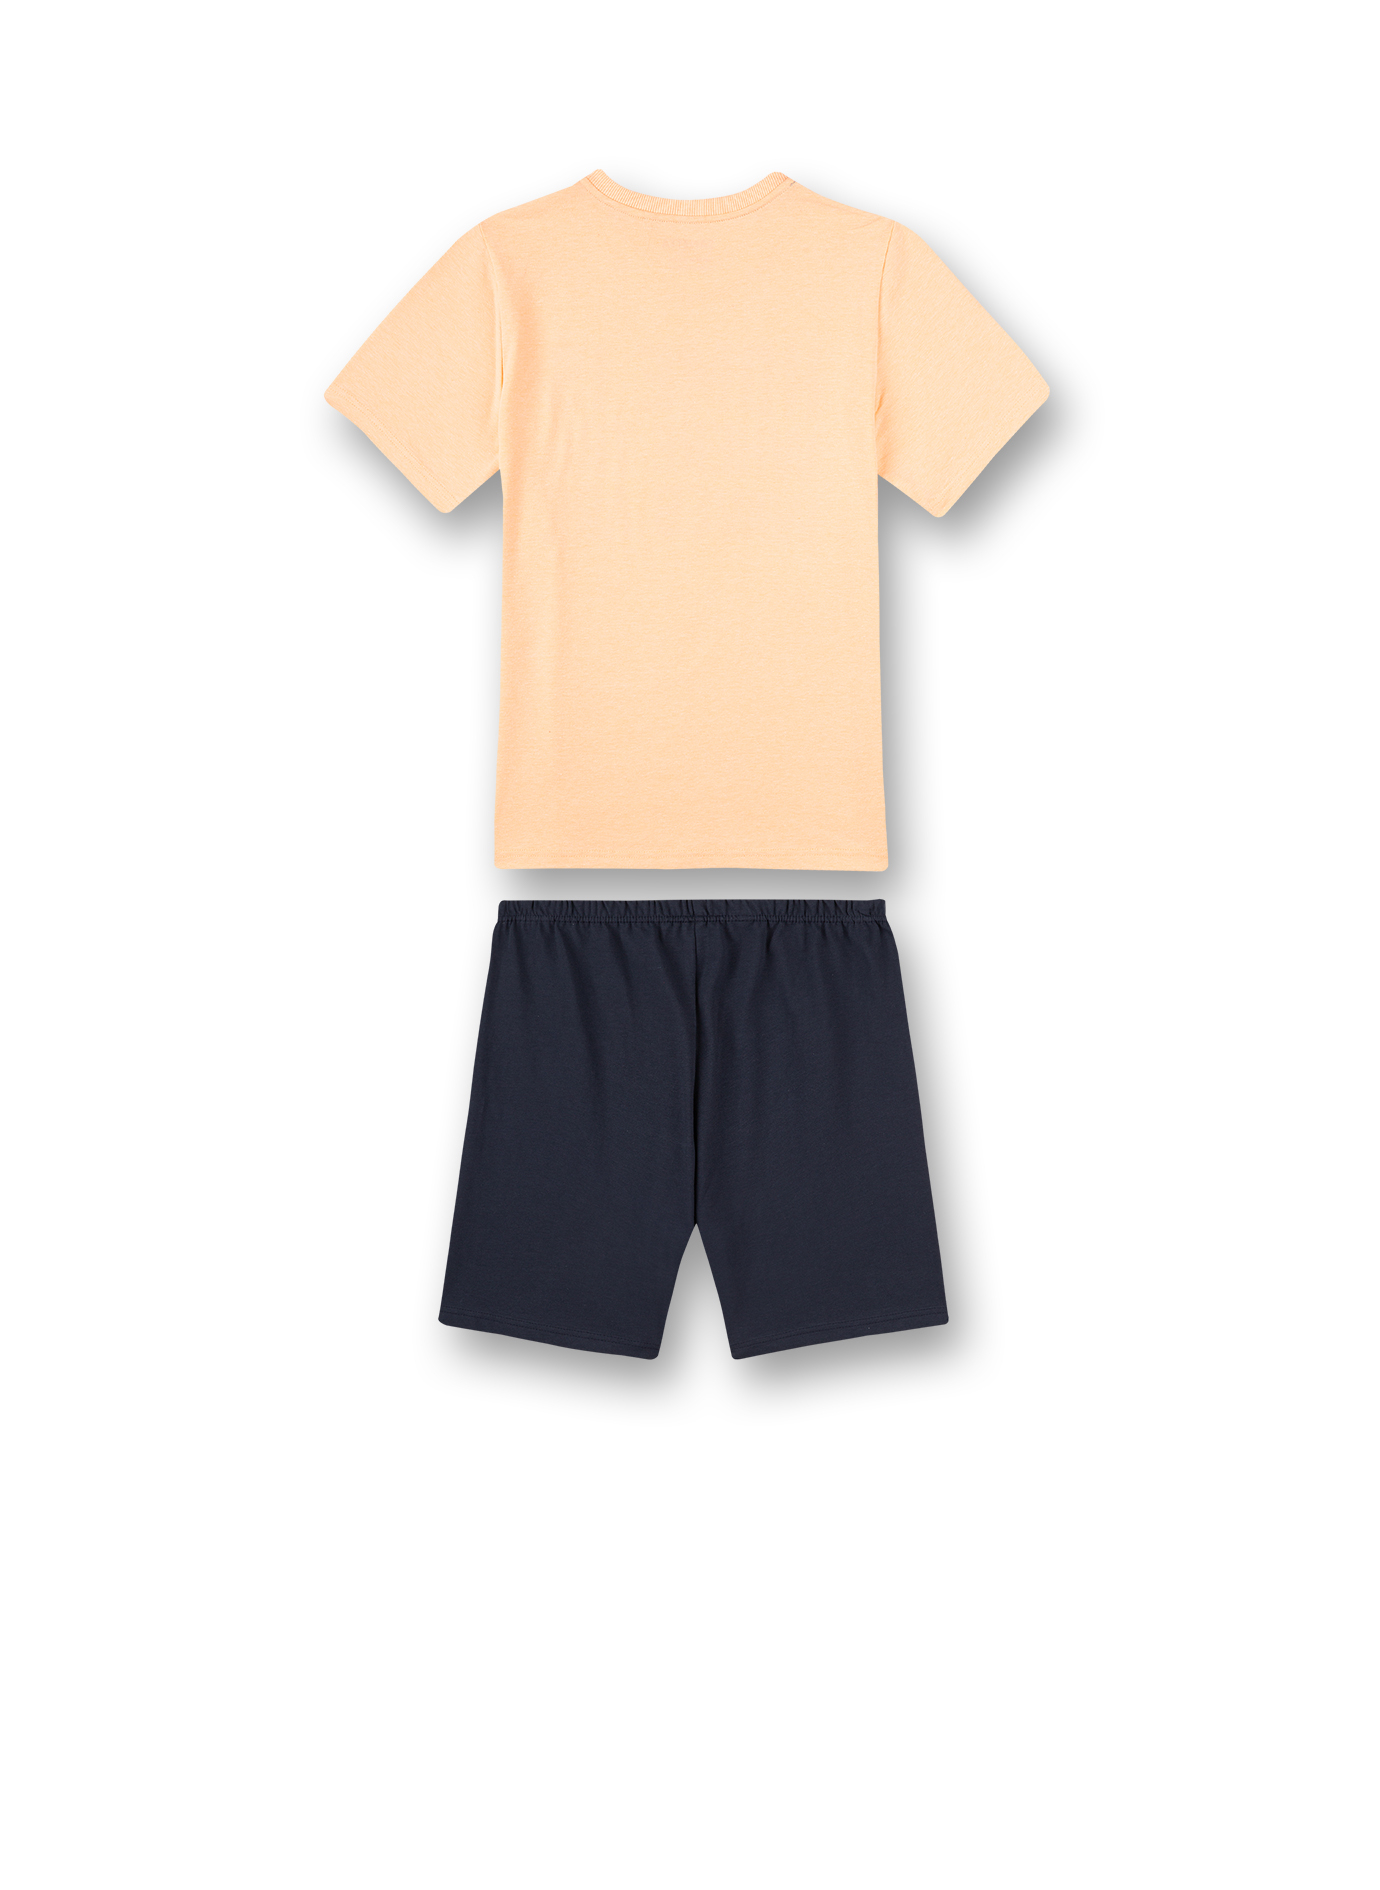 Jungen-Schlafanzug kurz Orange Wave Rider